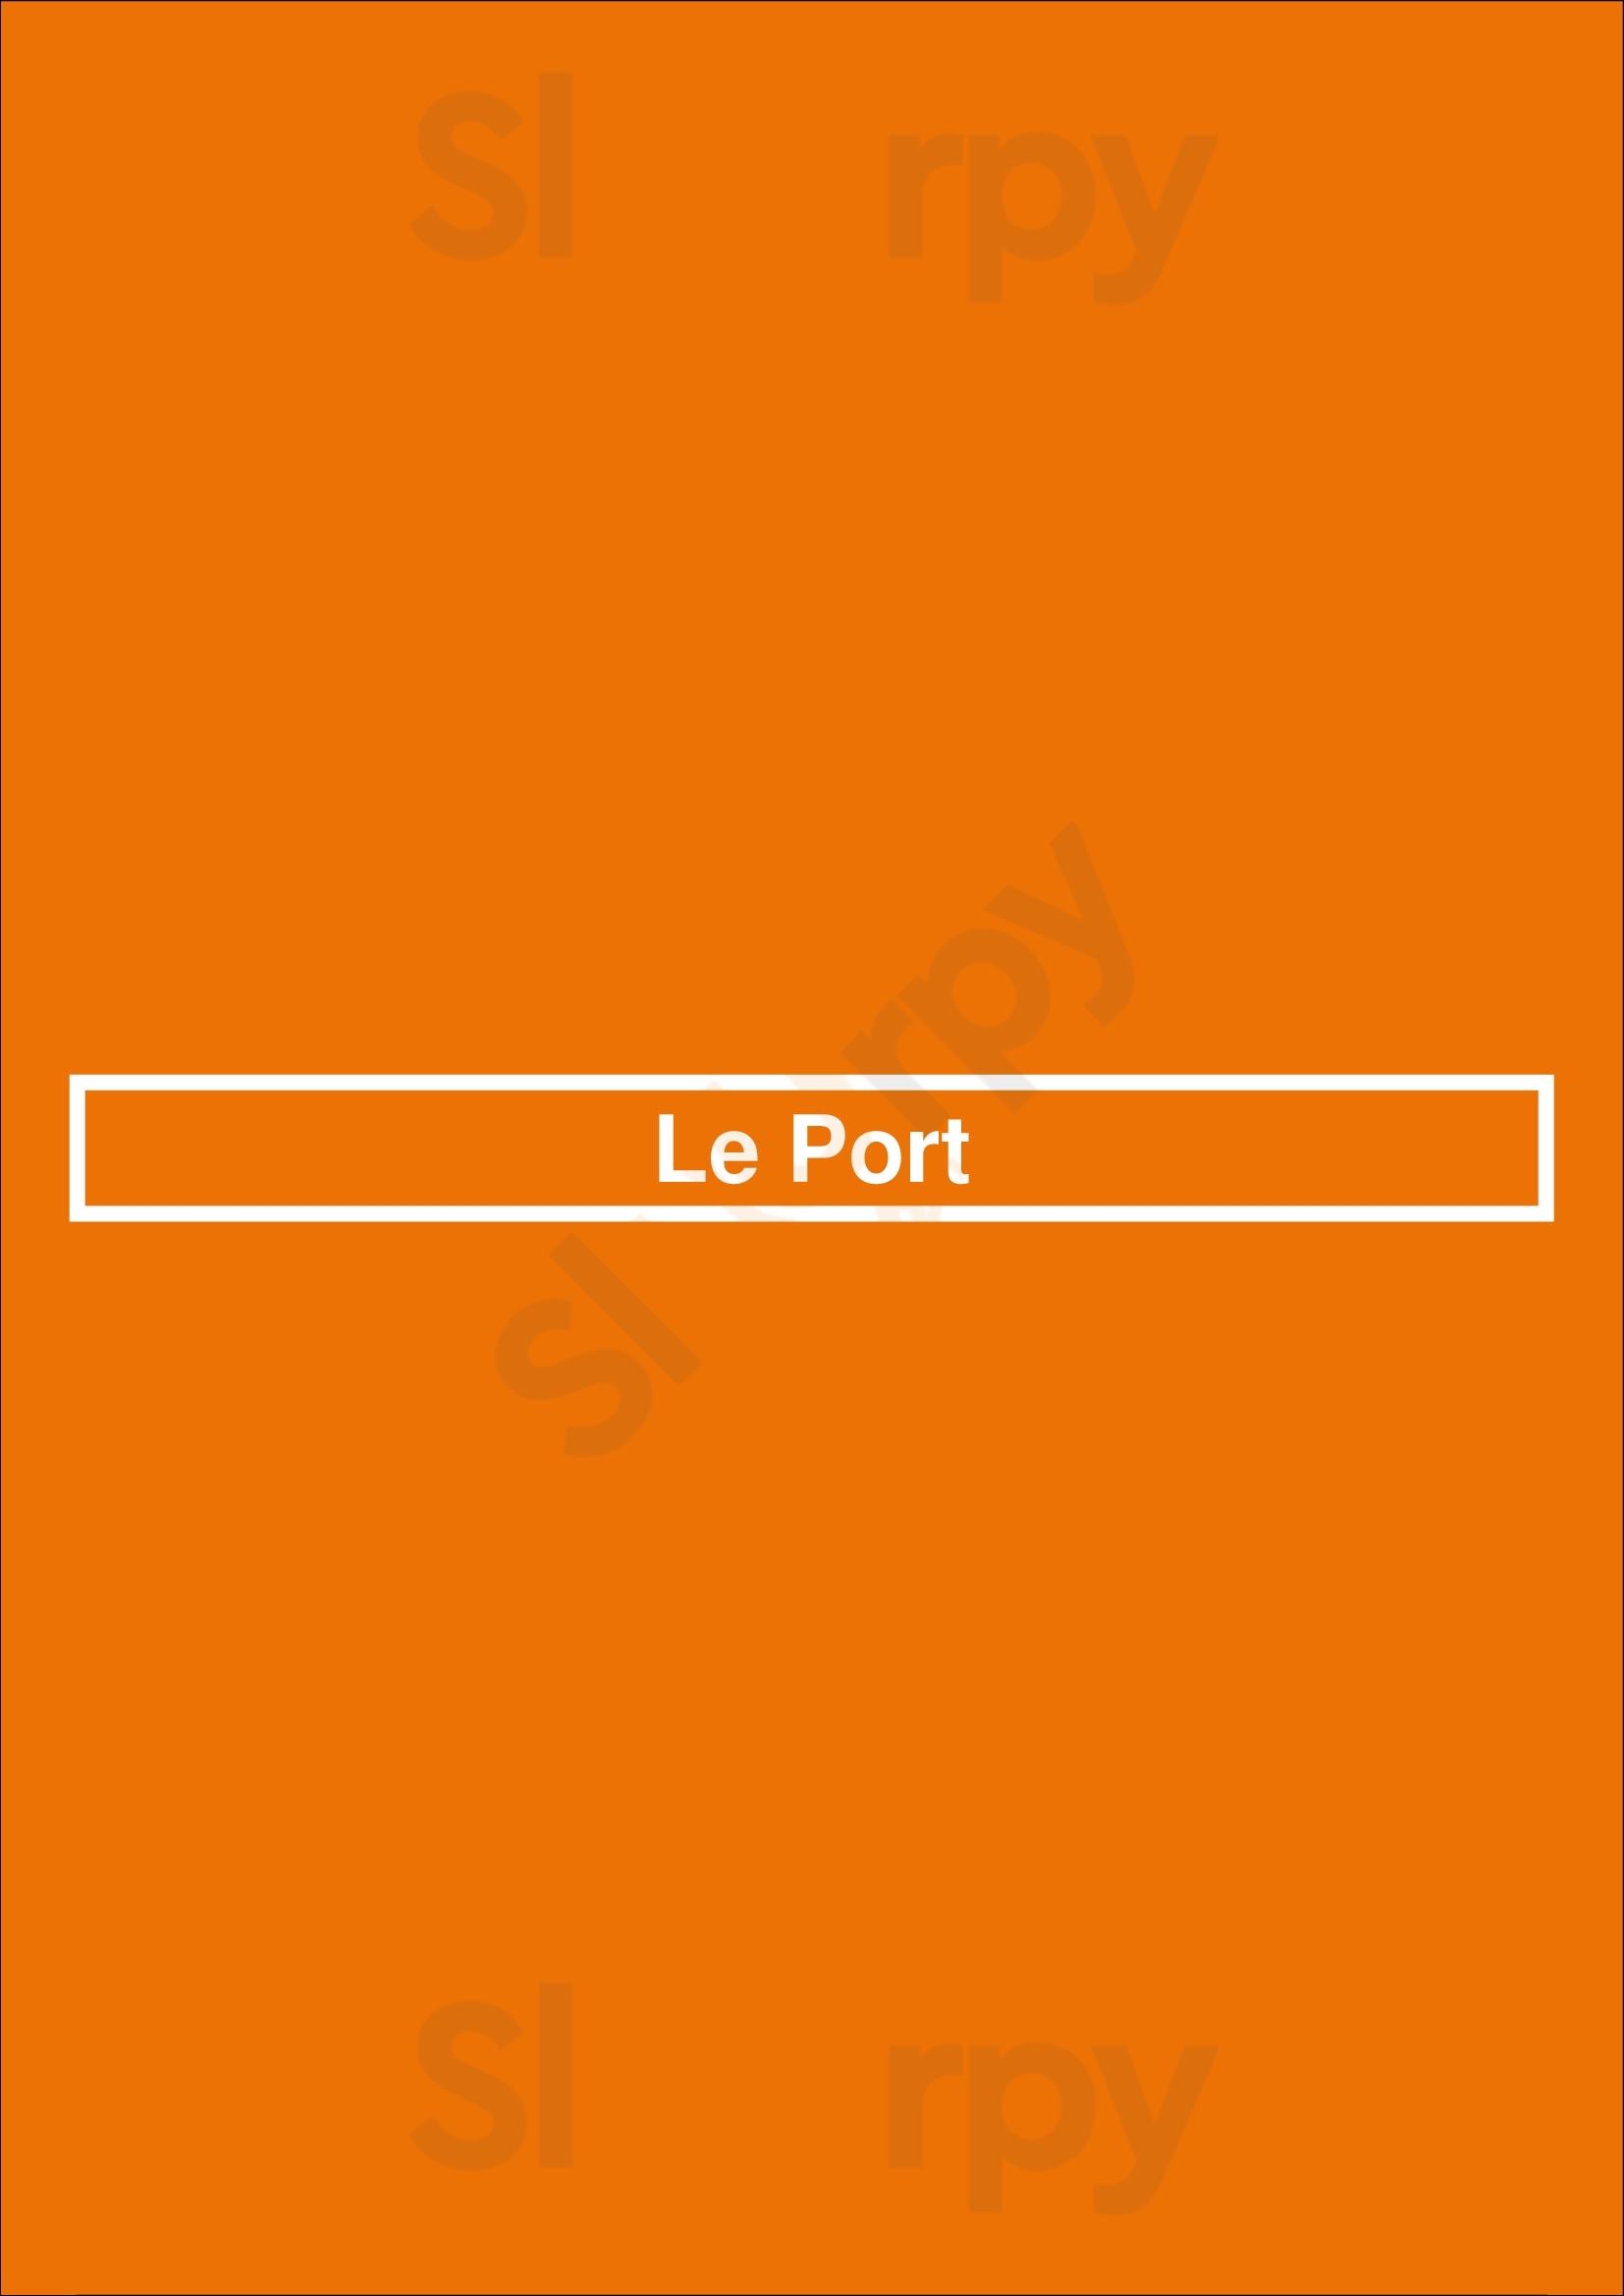 Le Port Barendrecht Menu - 1